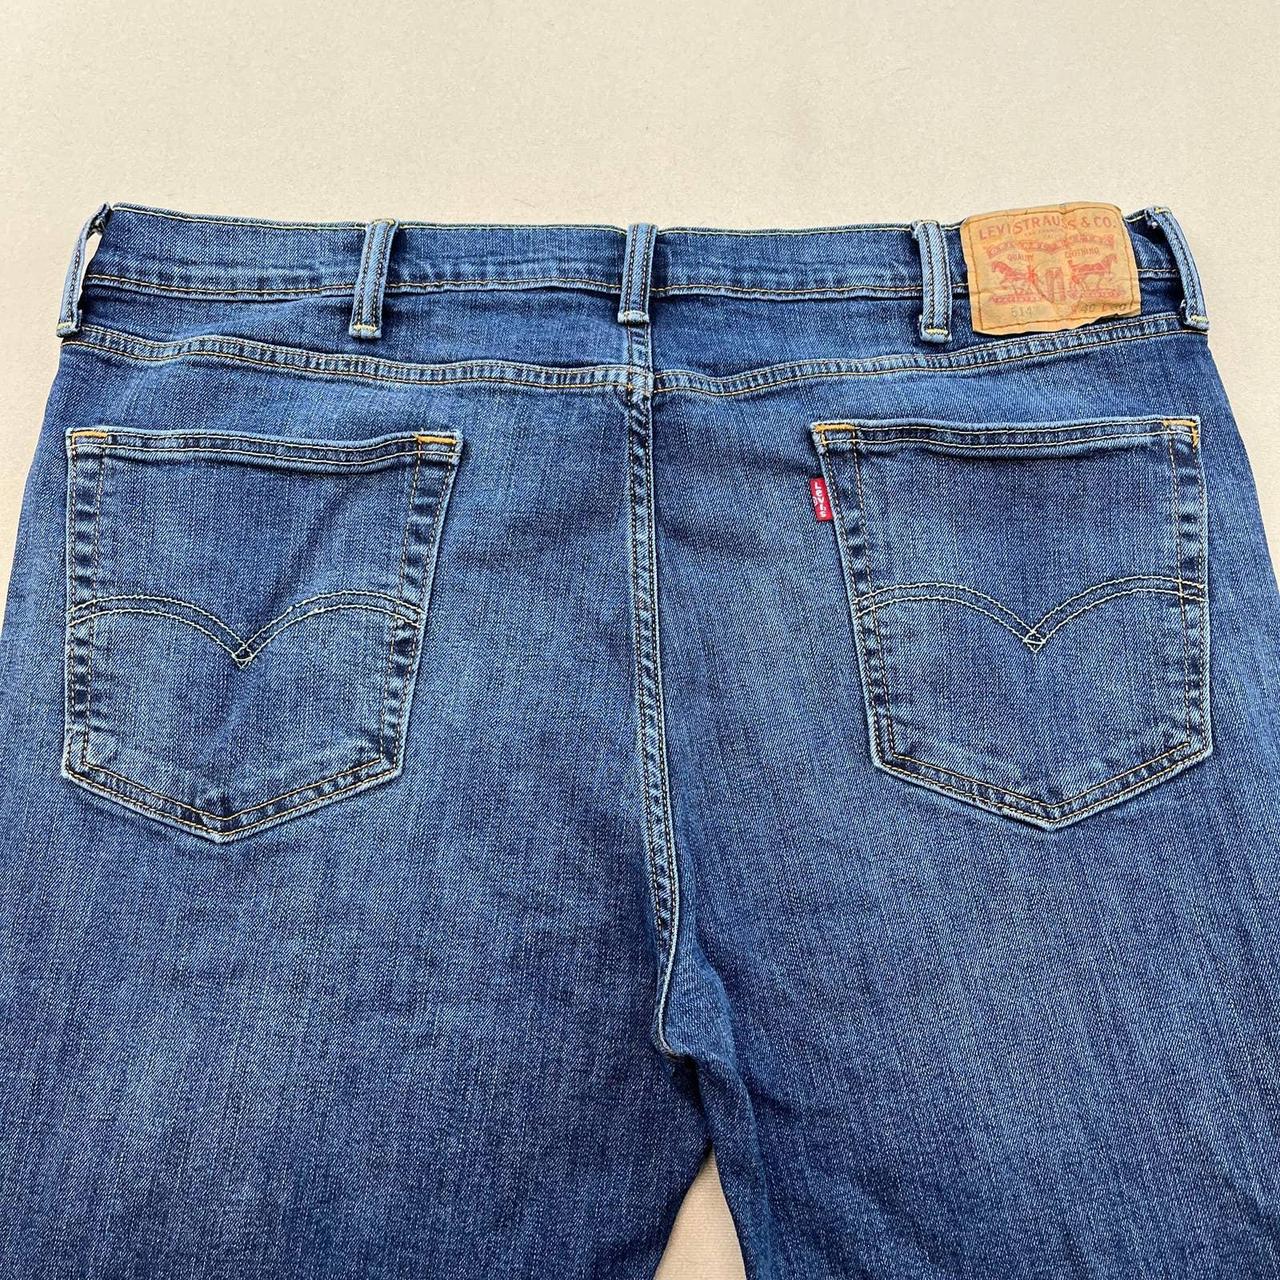 Levis 514 Straight Fit Blue Denim Jeans Mens 40x30... - Depop